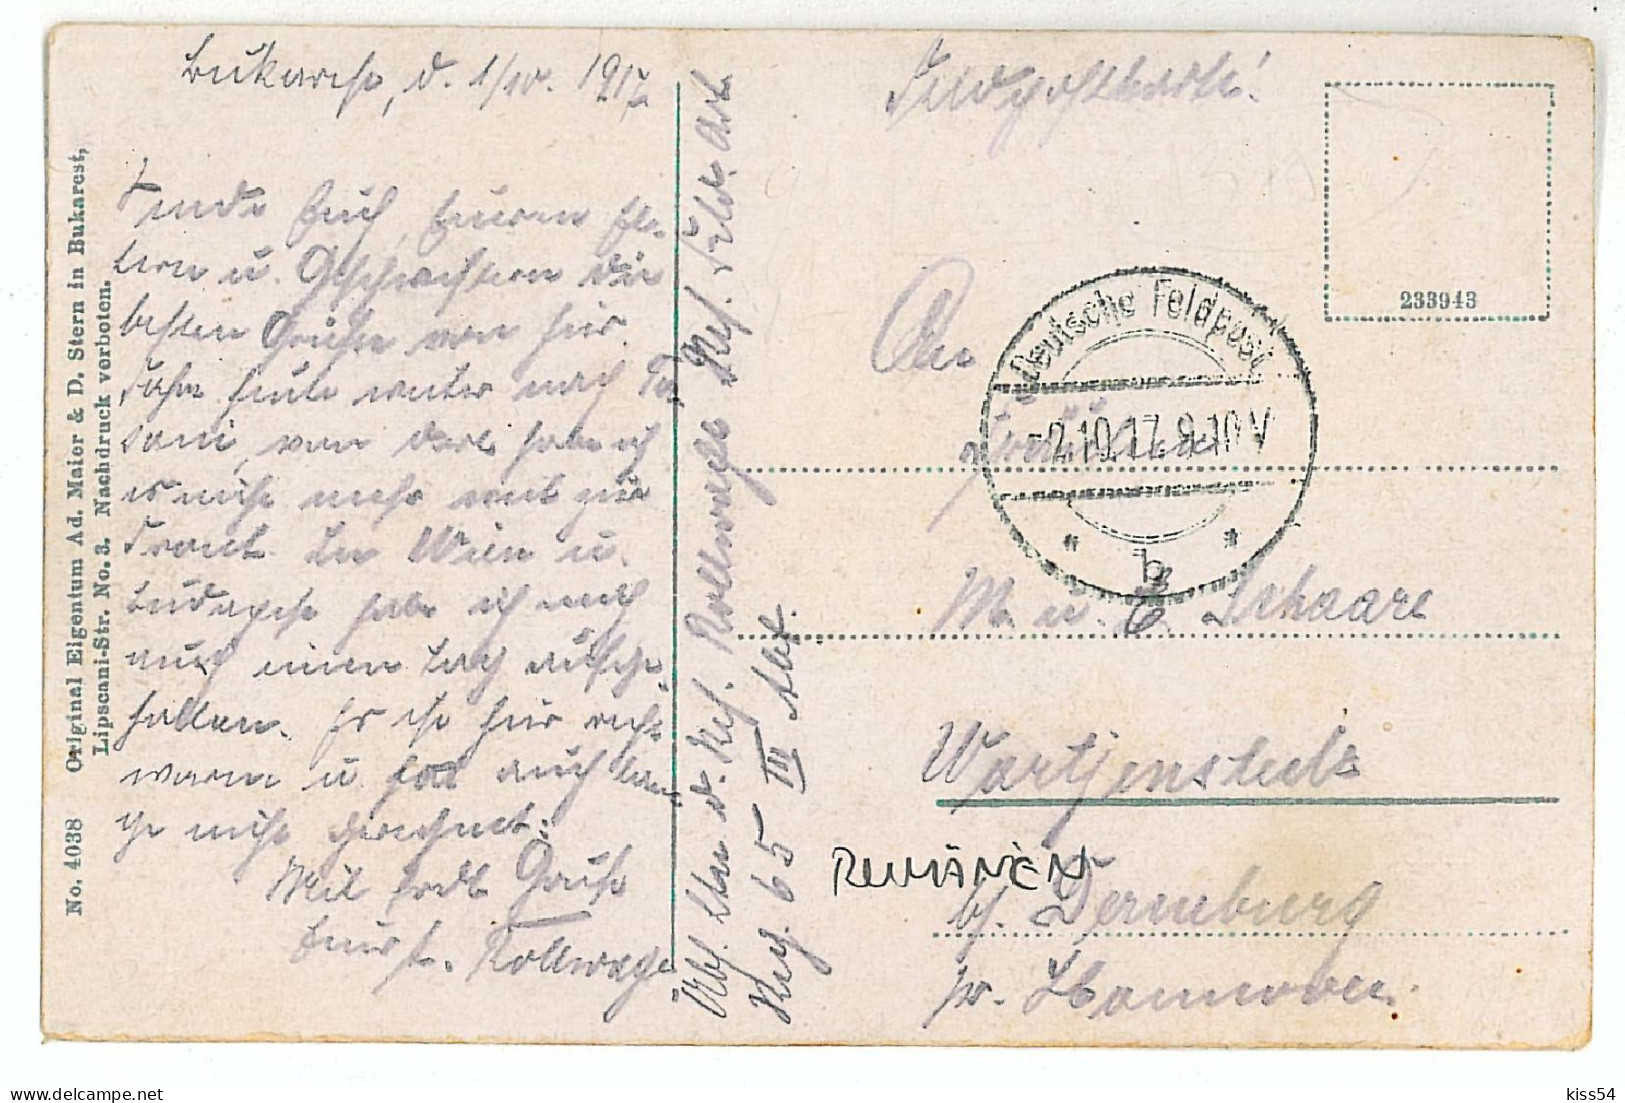 RO 40 - 1375 BUCURESTI, Bratianu Statue, Romania - Old Postcard - Used - 1917 - Romania